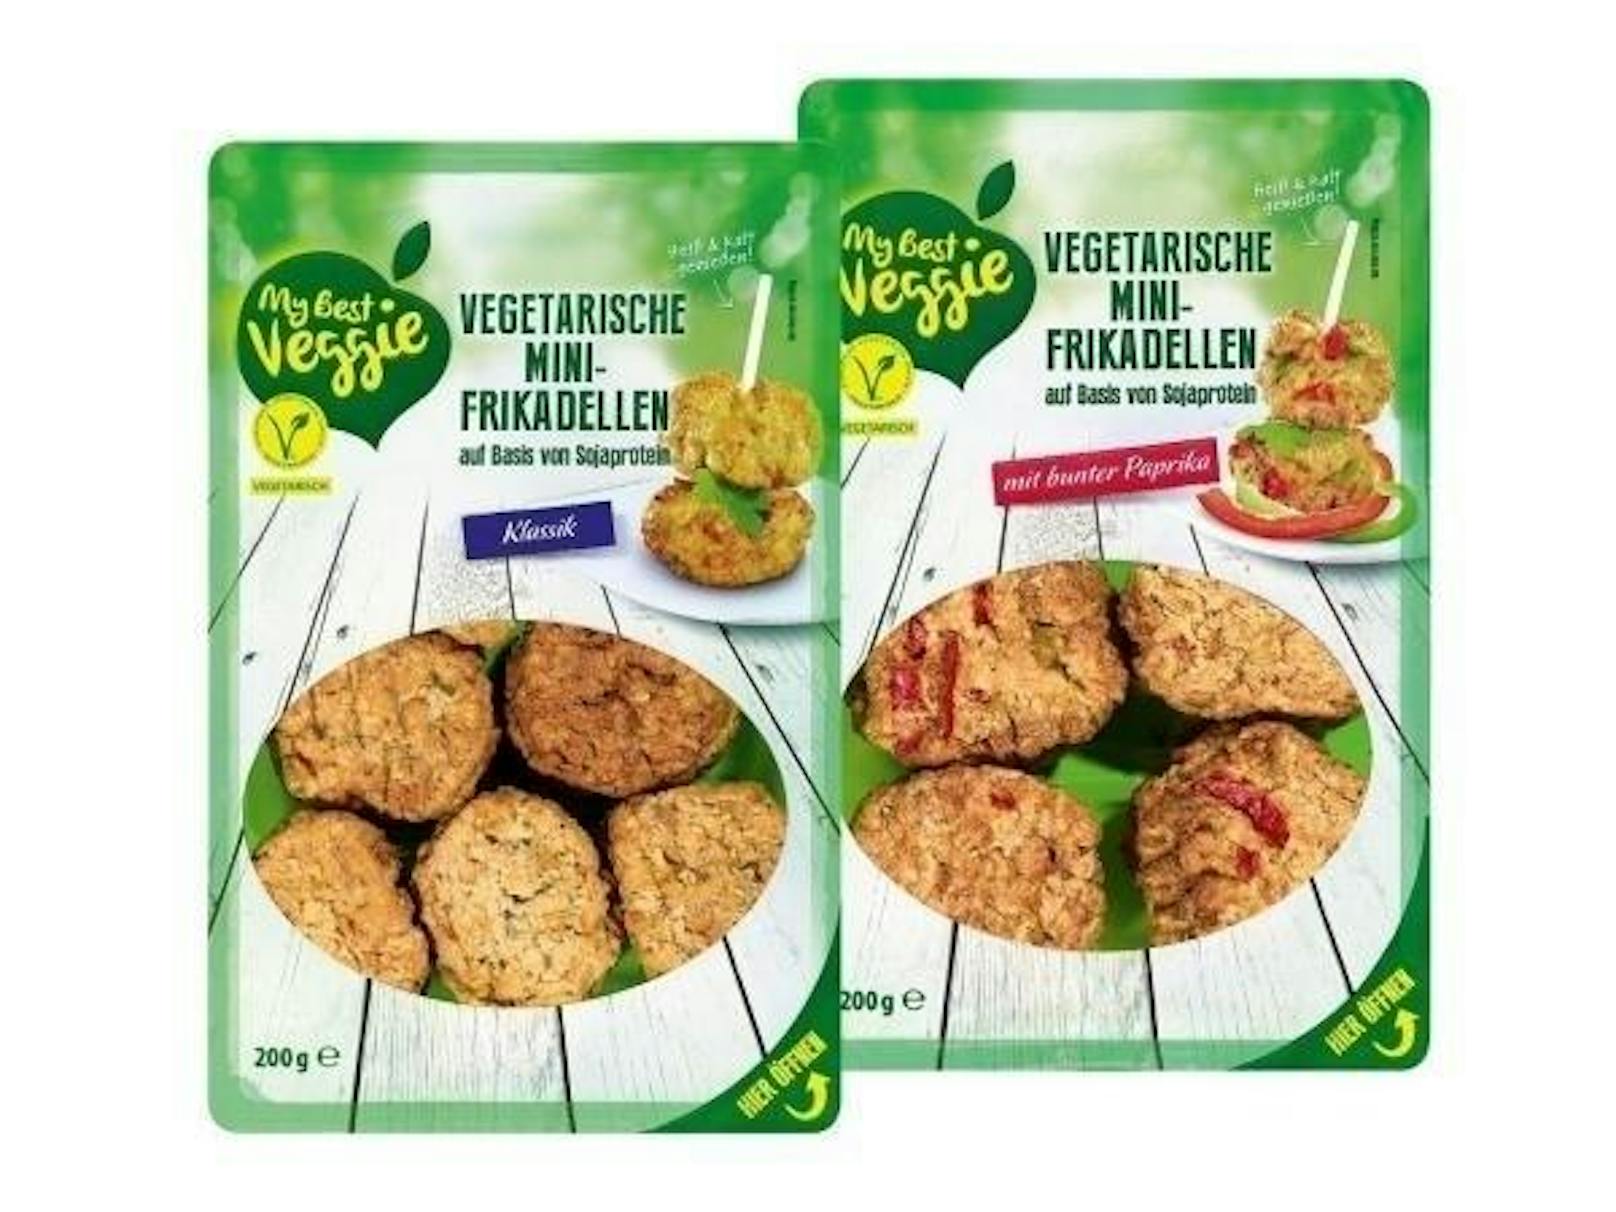 Negativ fielen auch zwei Produkte auf, die es bei Real und Lidl gibt: Im "Vegetarischen Schnitzel Wiener Art" und in den "My Best Veggie Vegetarischen Mini-Frikadellen" stießen die Tester auf gentechnisch veränderte Soja-DNA.